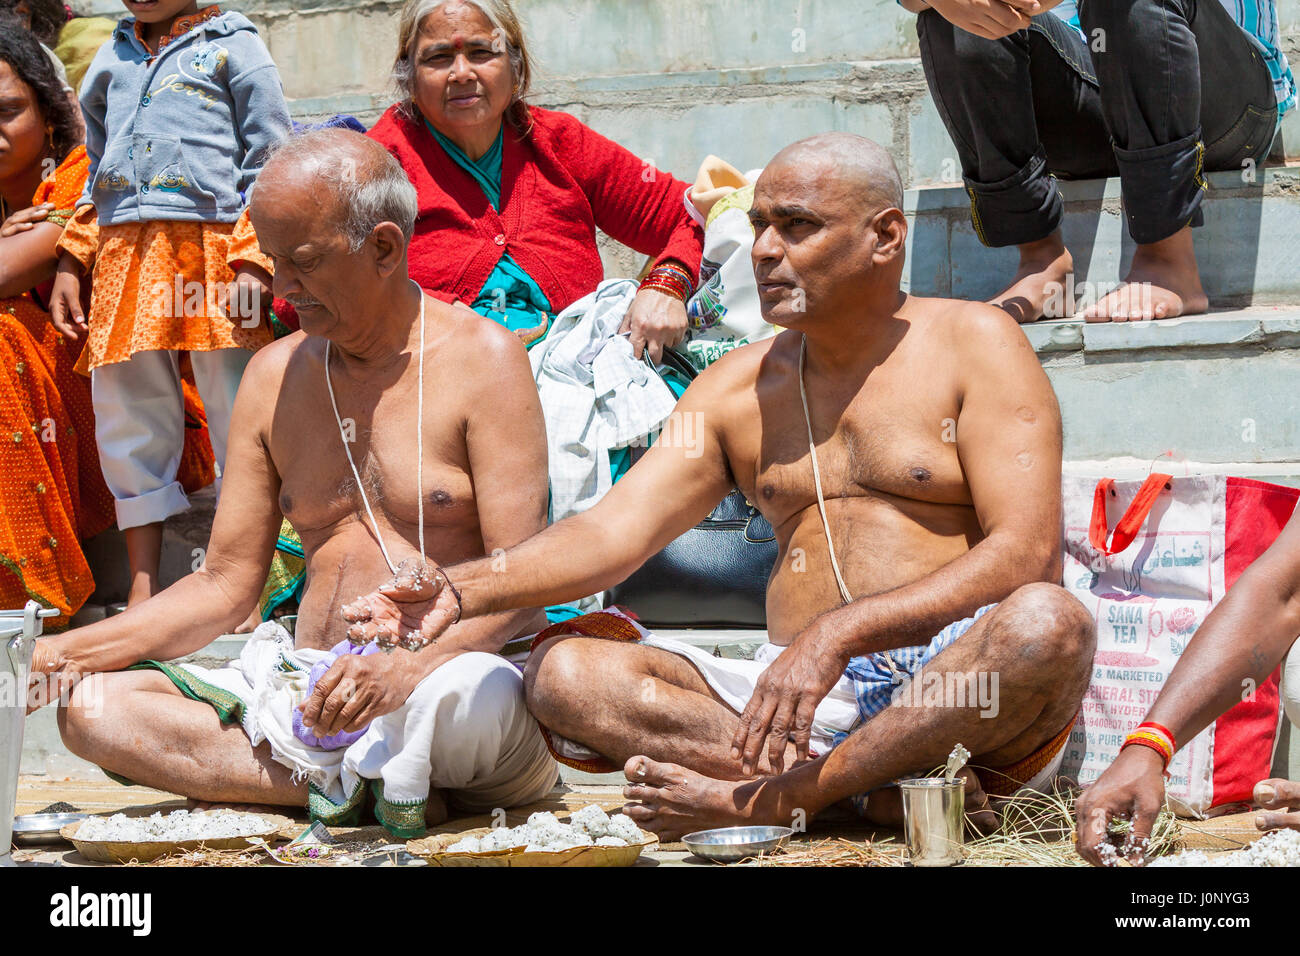 BADRINATH, Inde, 5 juin - Les pèlerins propose des prières à leurs ancêtres, près de la rivière Alakananda au temple d'Badarinath en Inde du Nord le 5 juin Banque D'Images